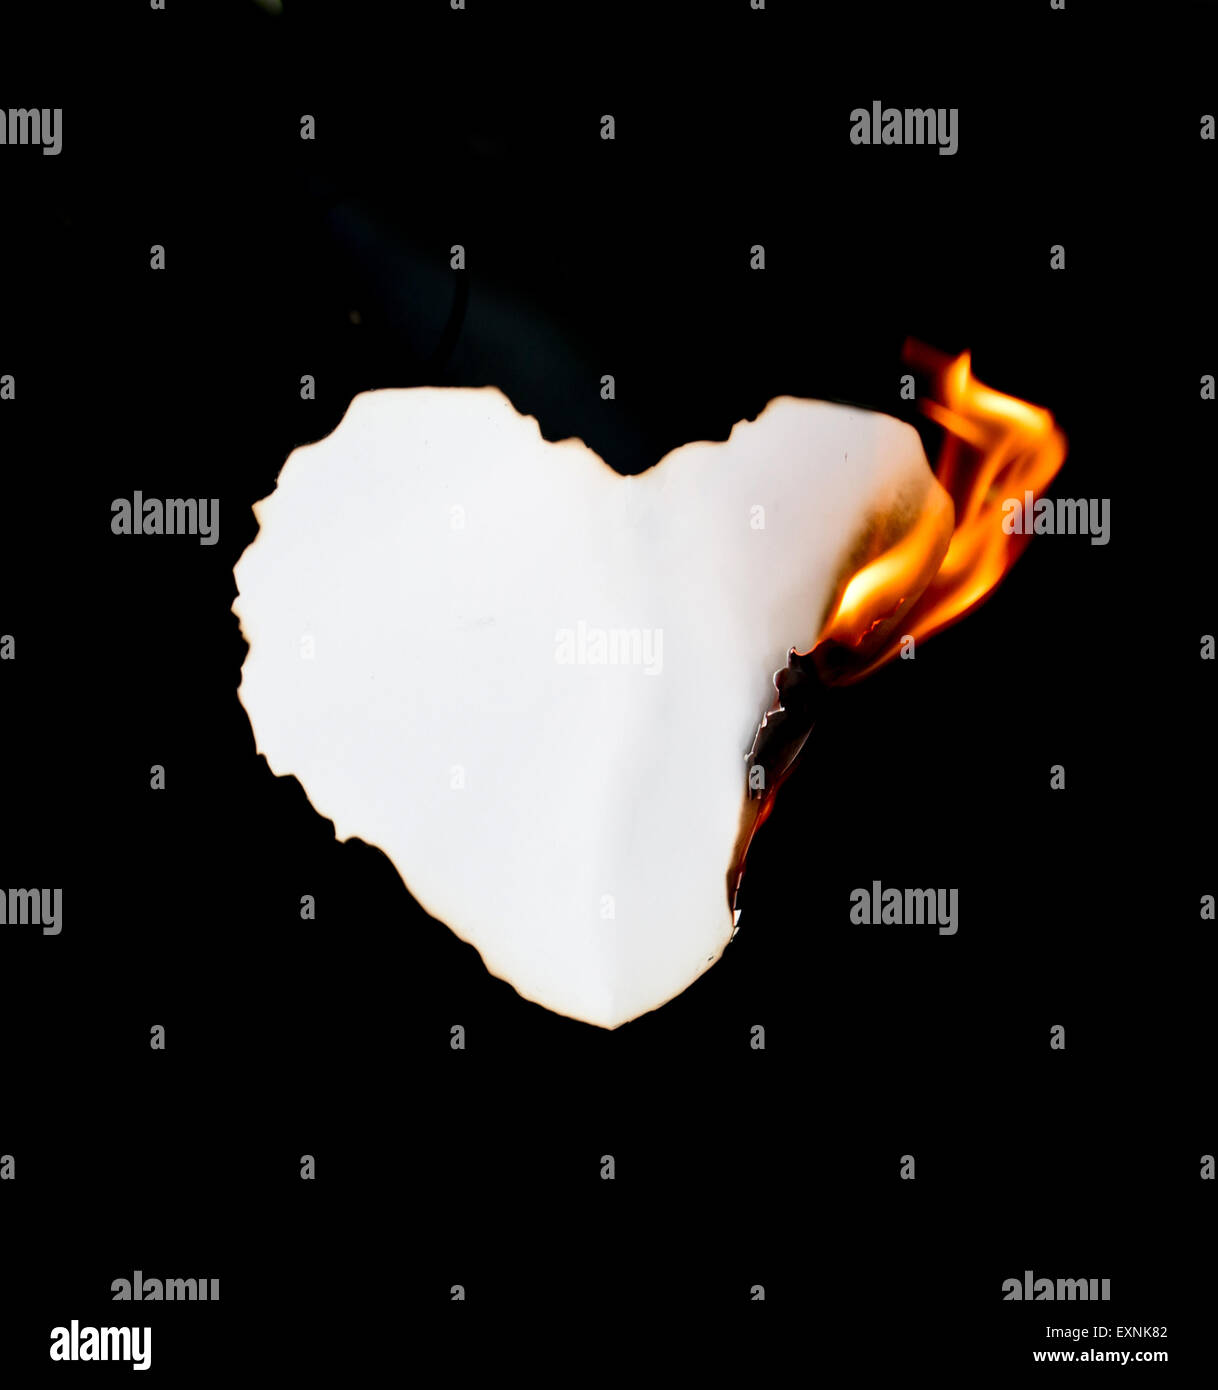 heart shape paper burning on black background Stock Photo